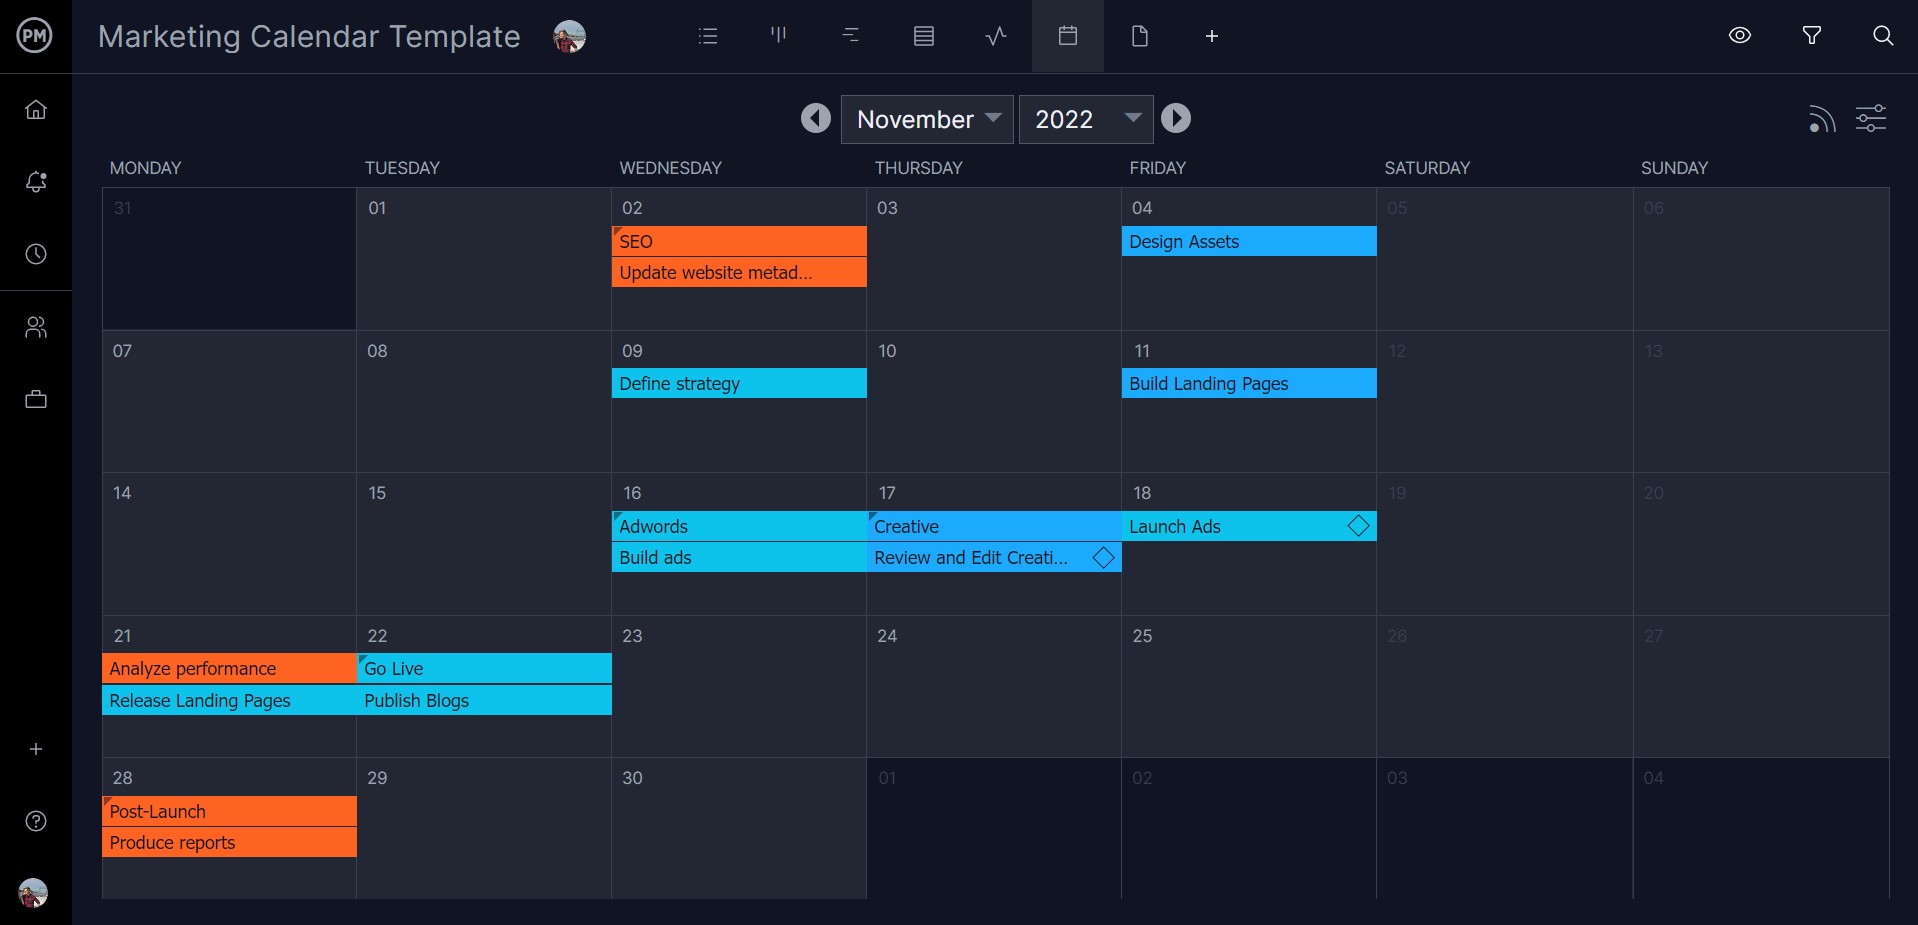 Calendar for tracking strategic plans